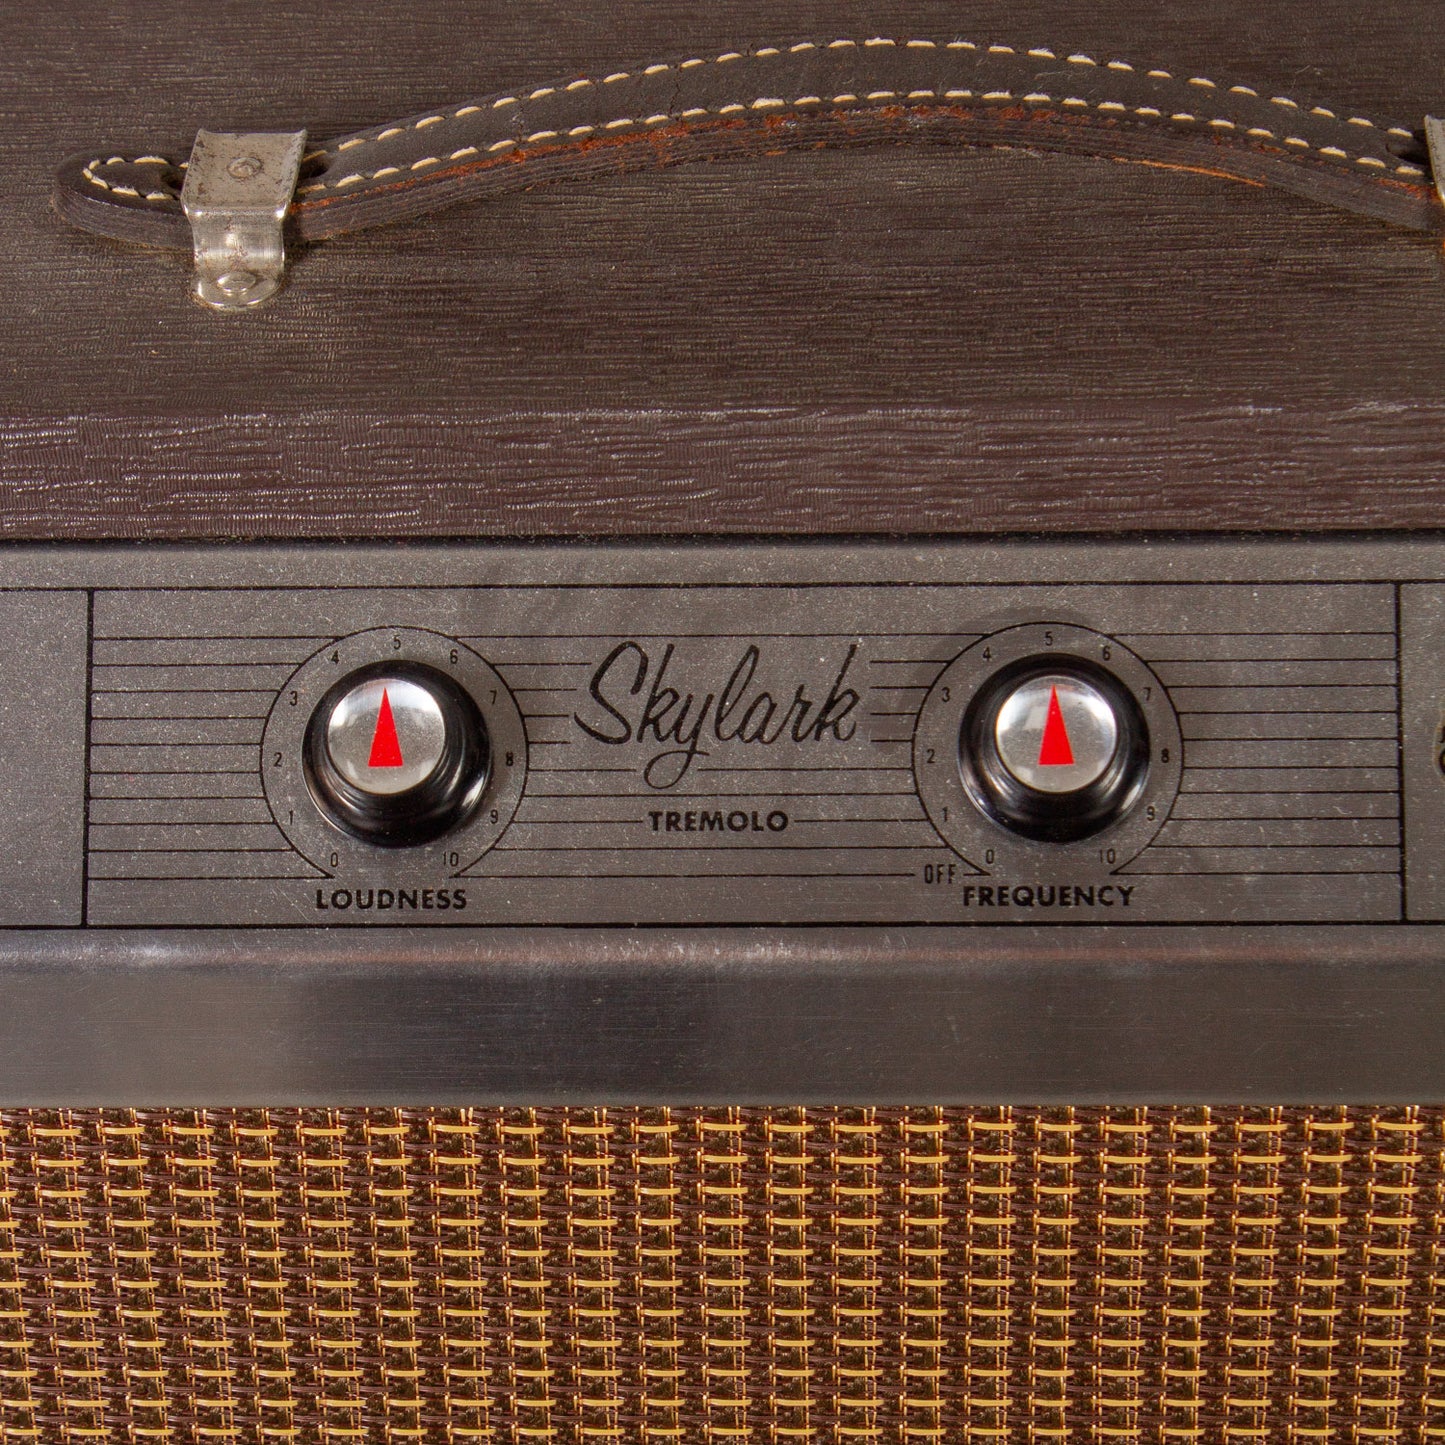 1960s Gibson Skylark Amp